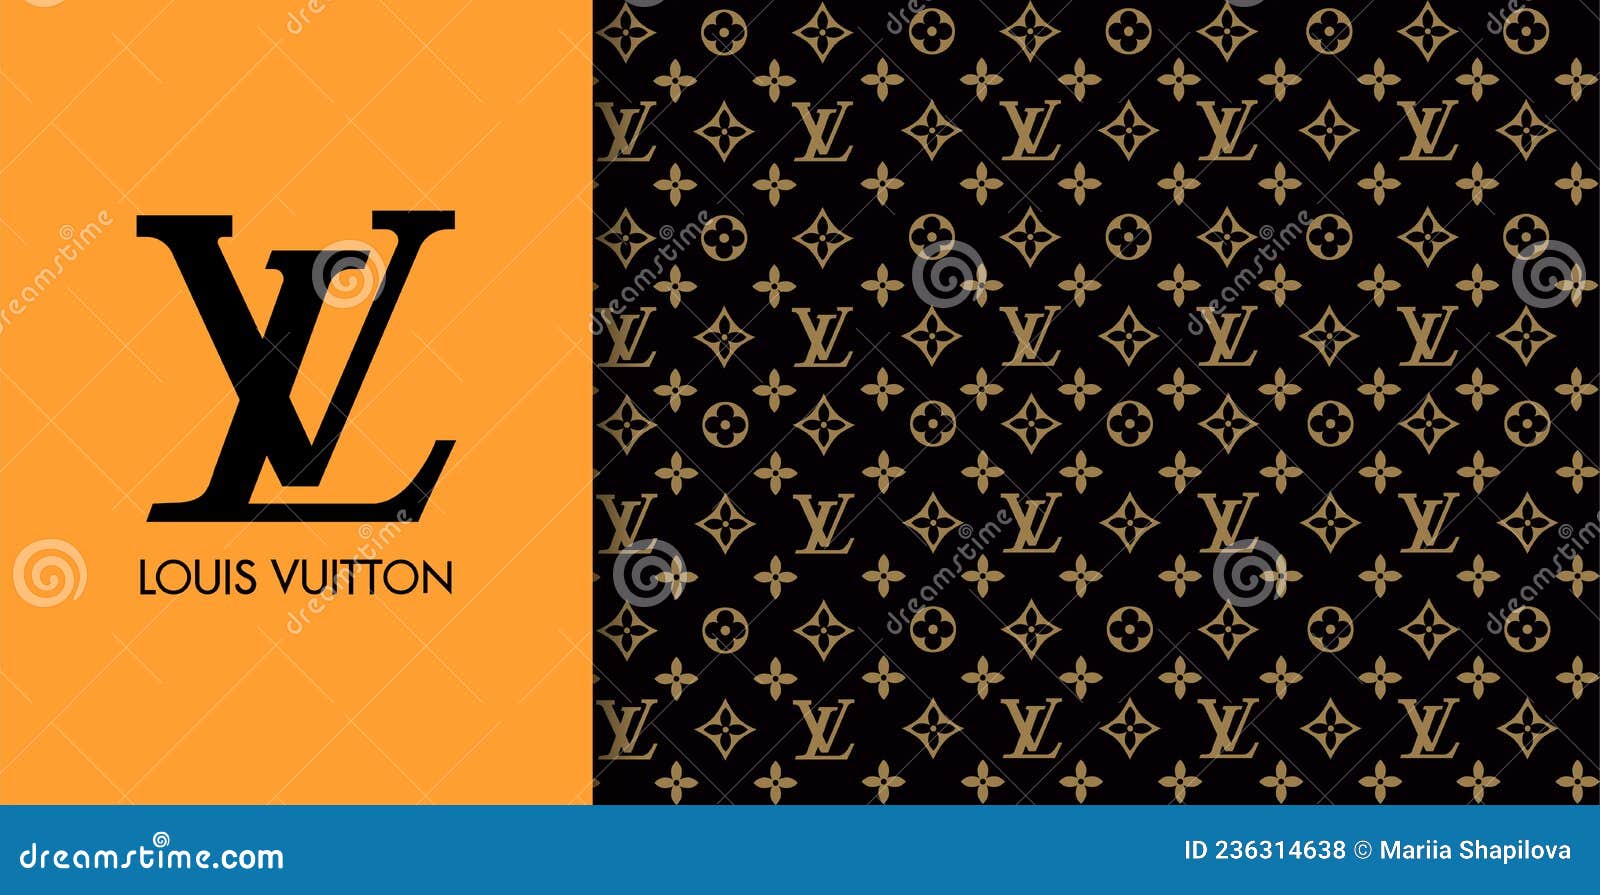 Vuitton Ilustrações, Vetores E Clipart De Stock – (156 Stock Illustrations)